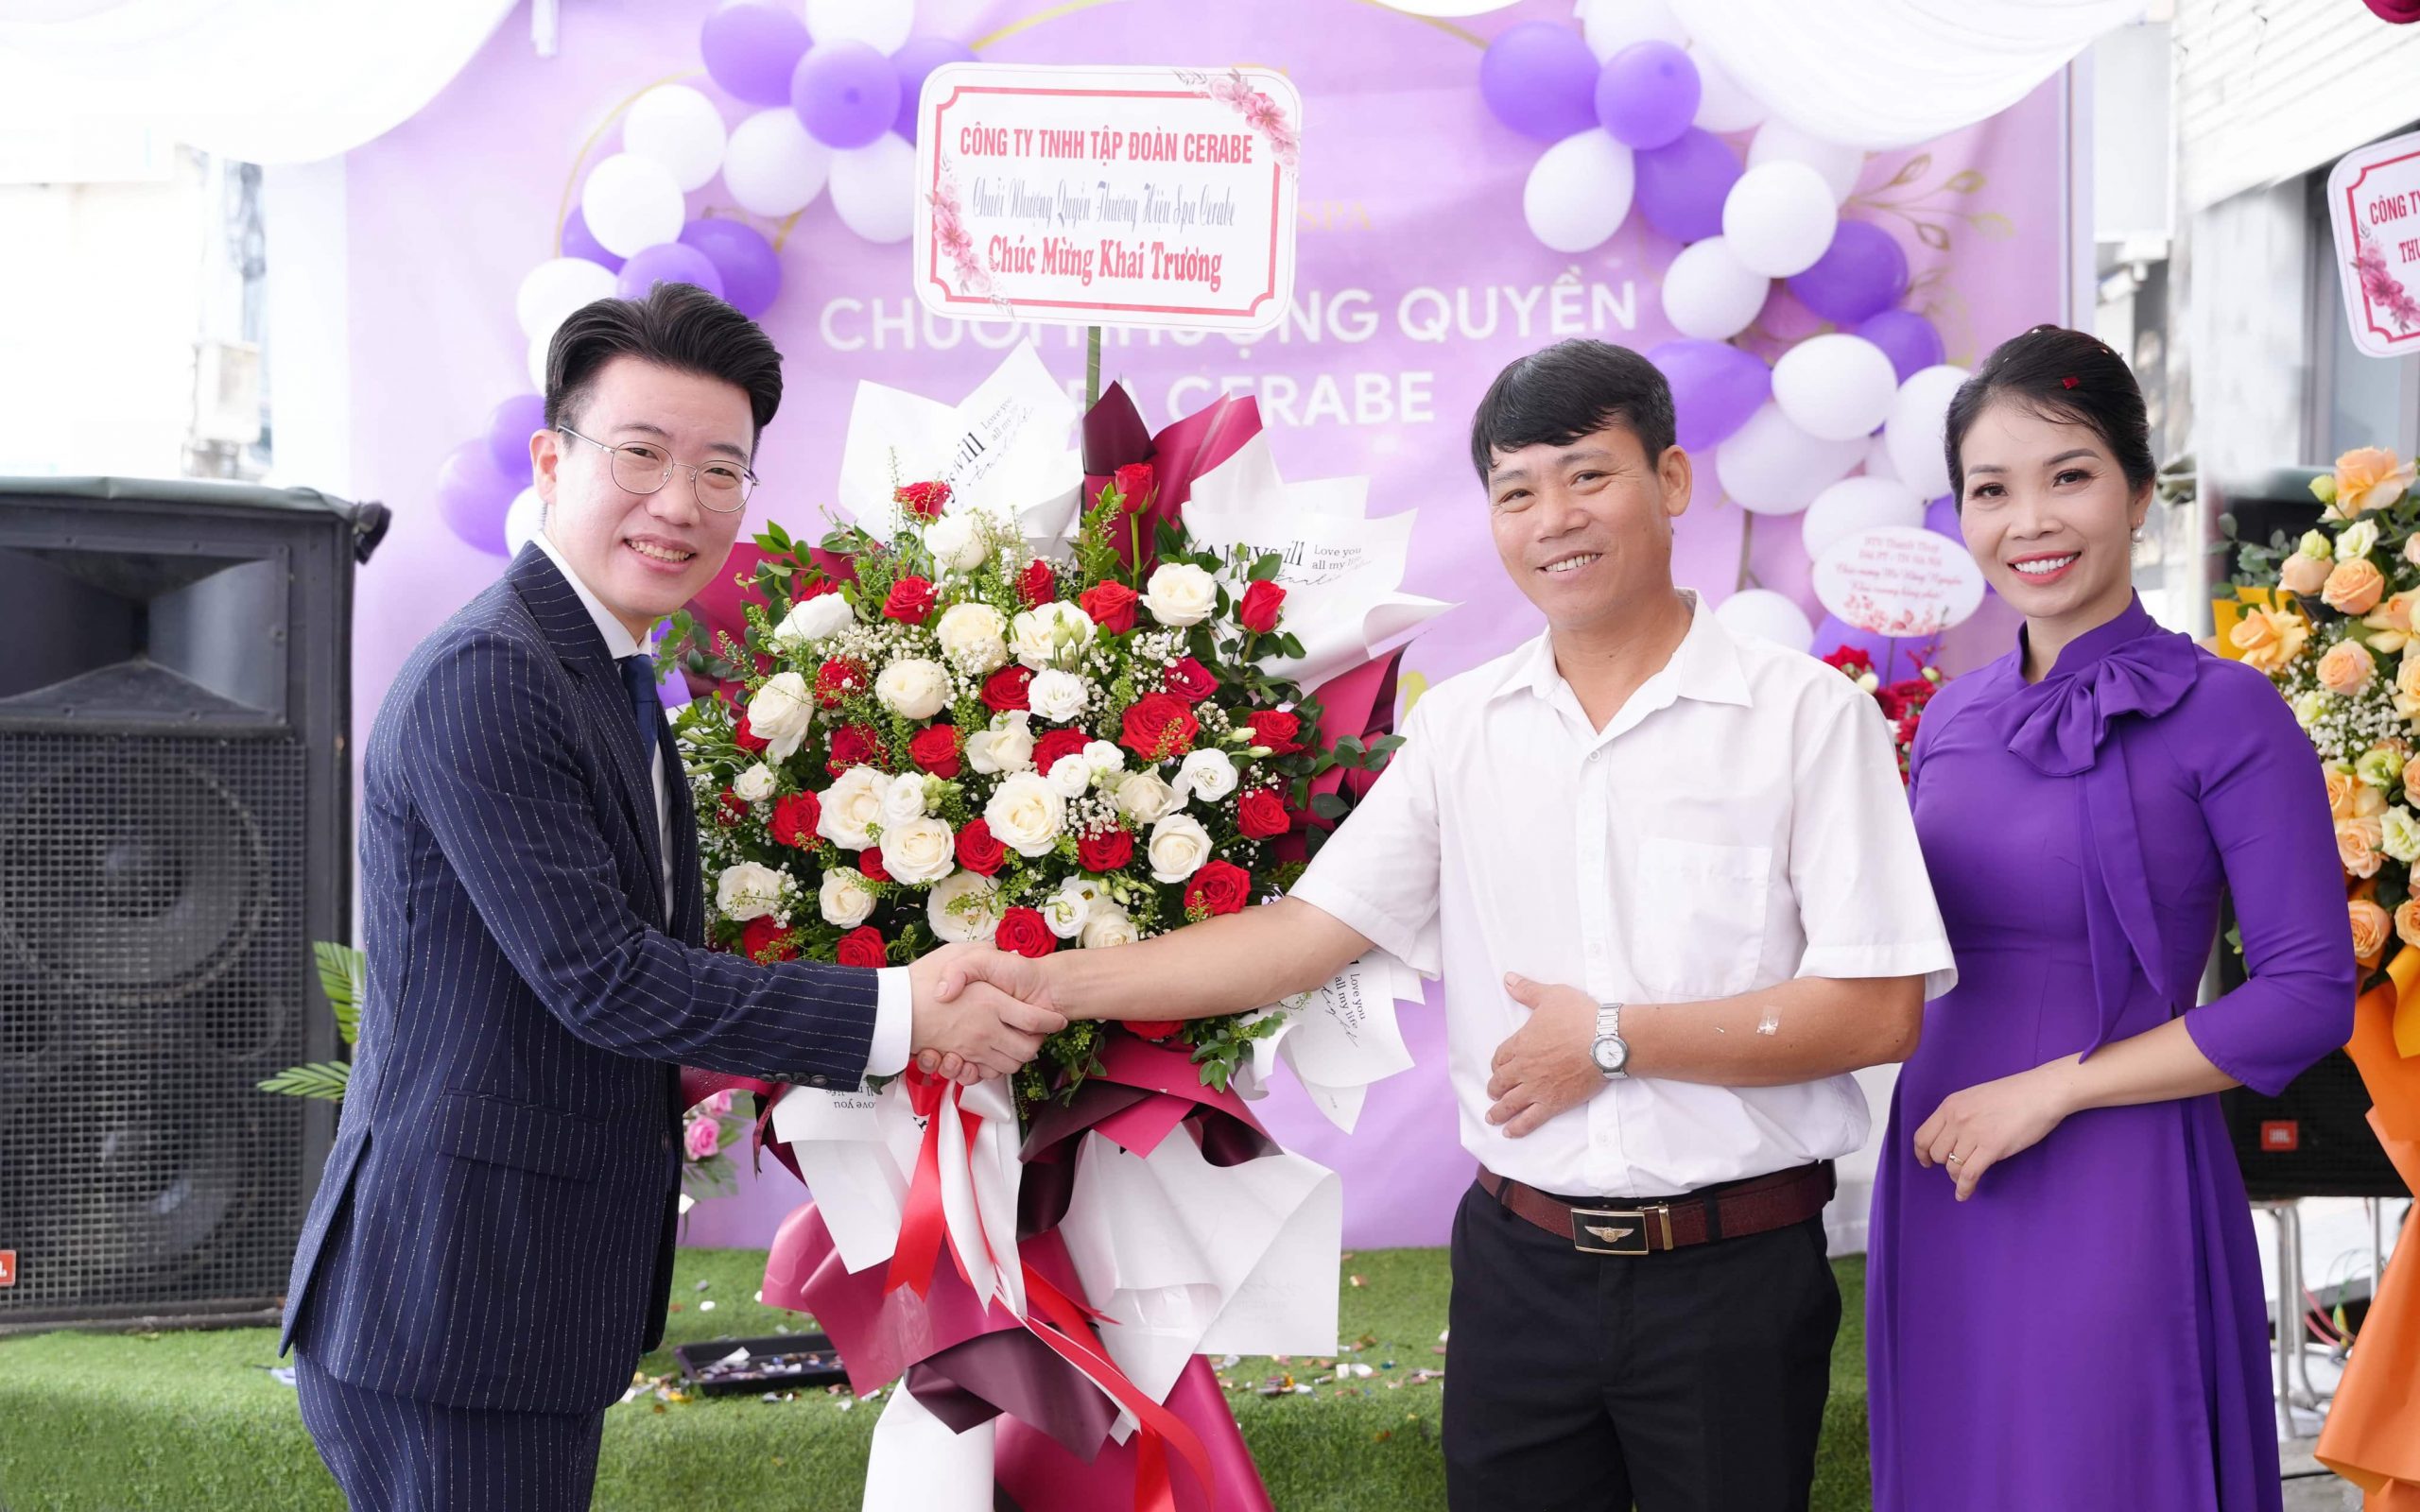 Giám đốc Shin Jong Ho thân tặng lãng hoa tưới chúc mừng cho anh chị chủ Spa Cerabe